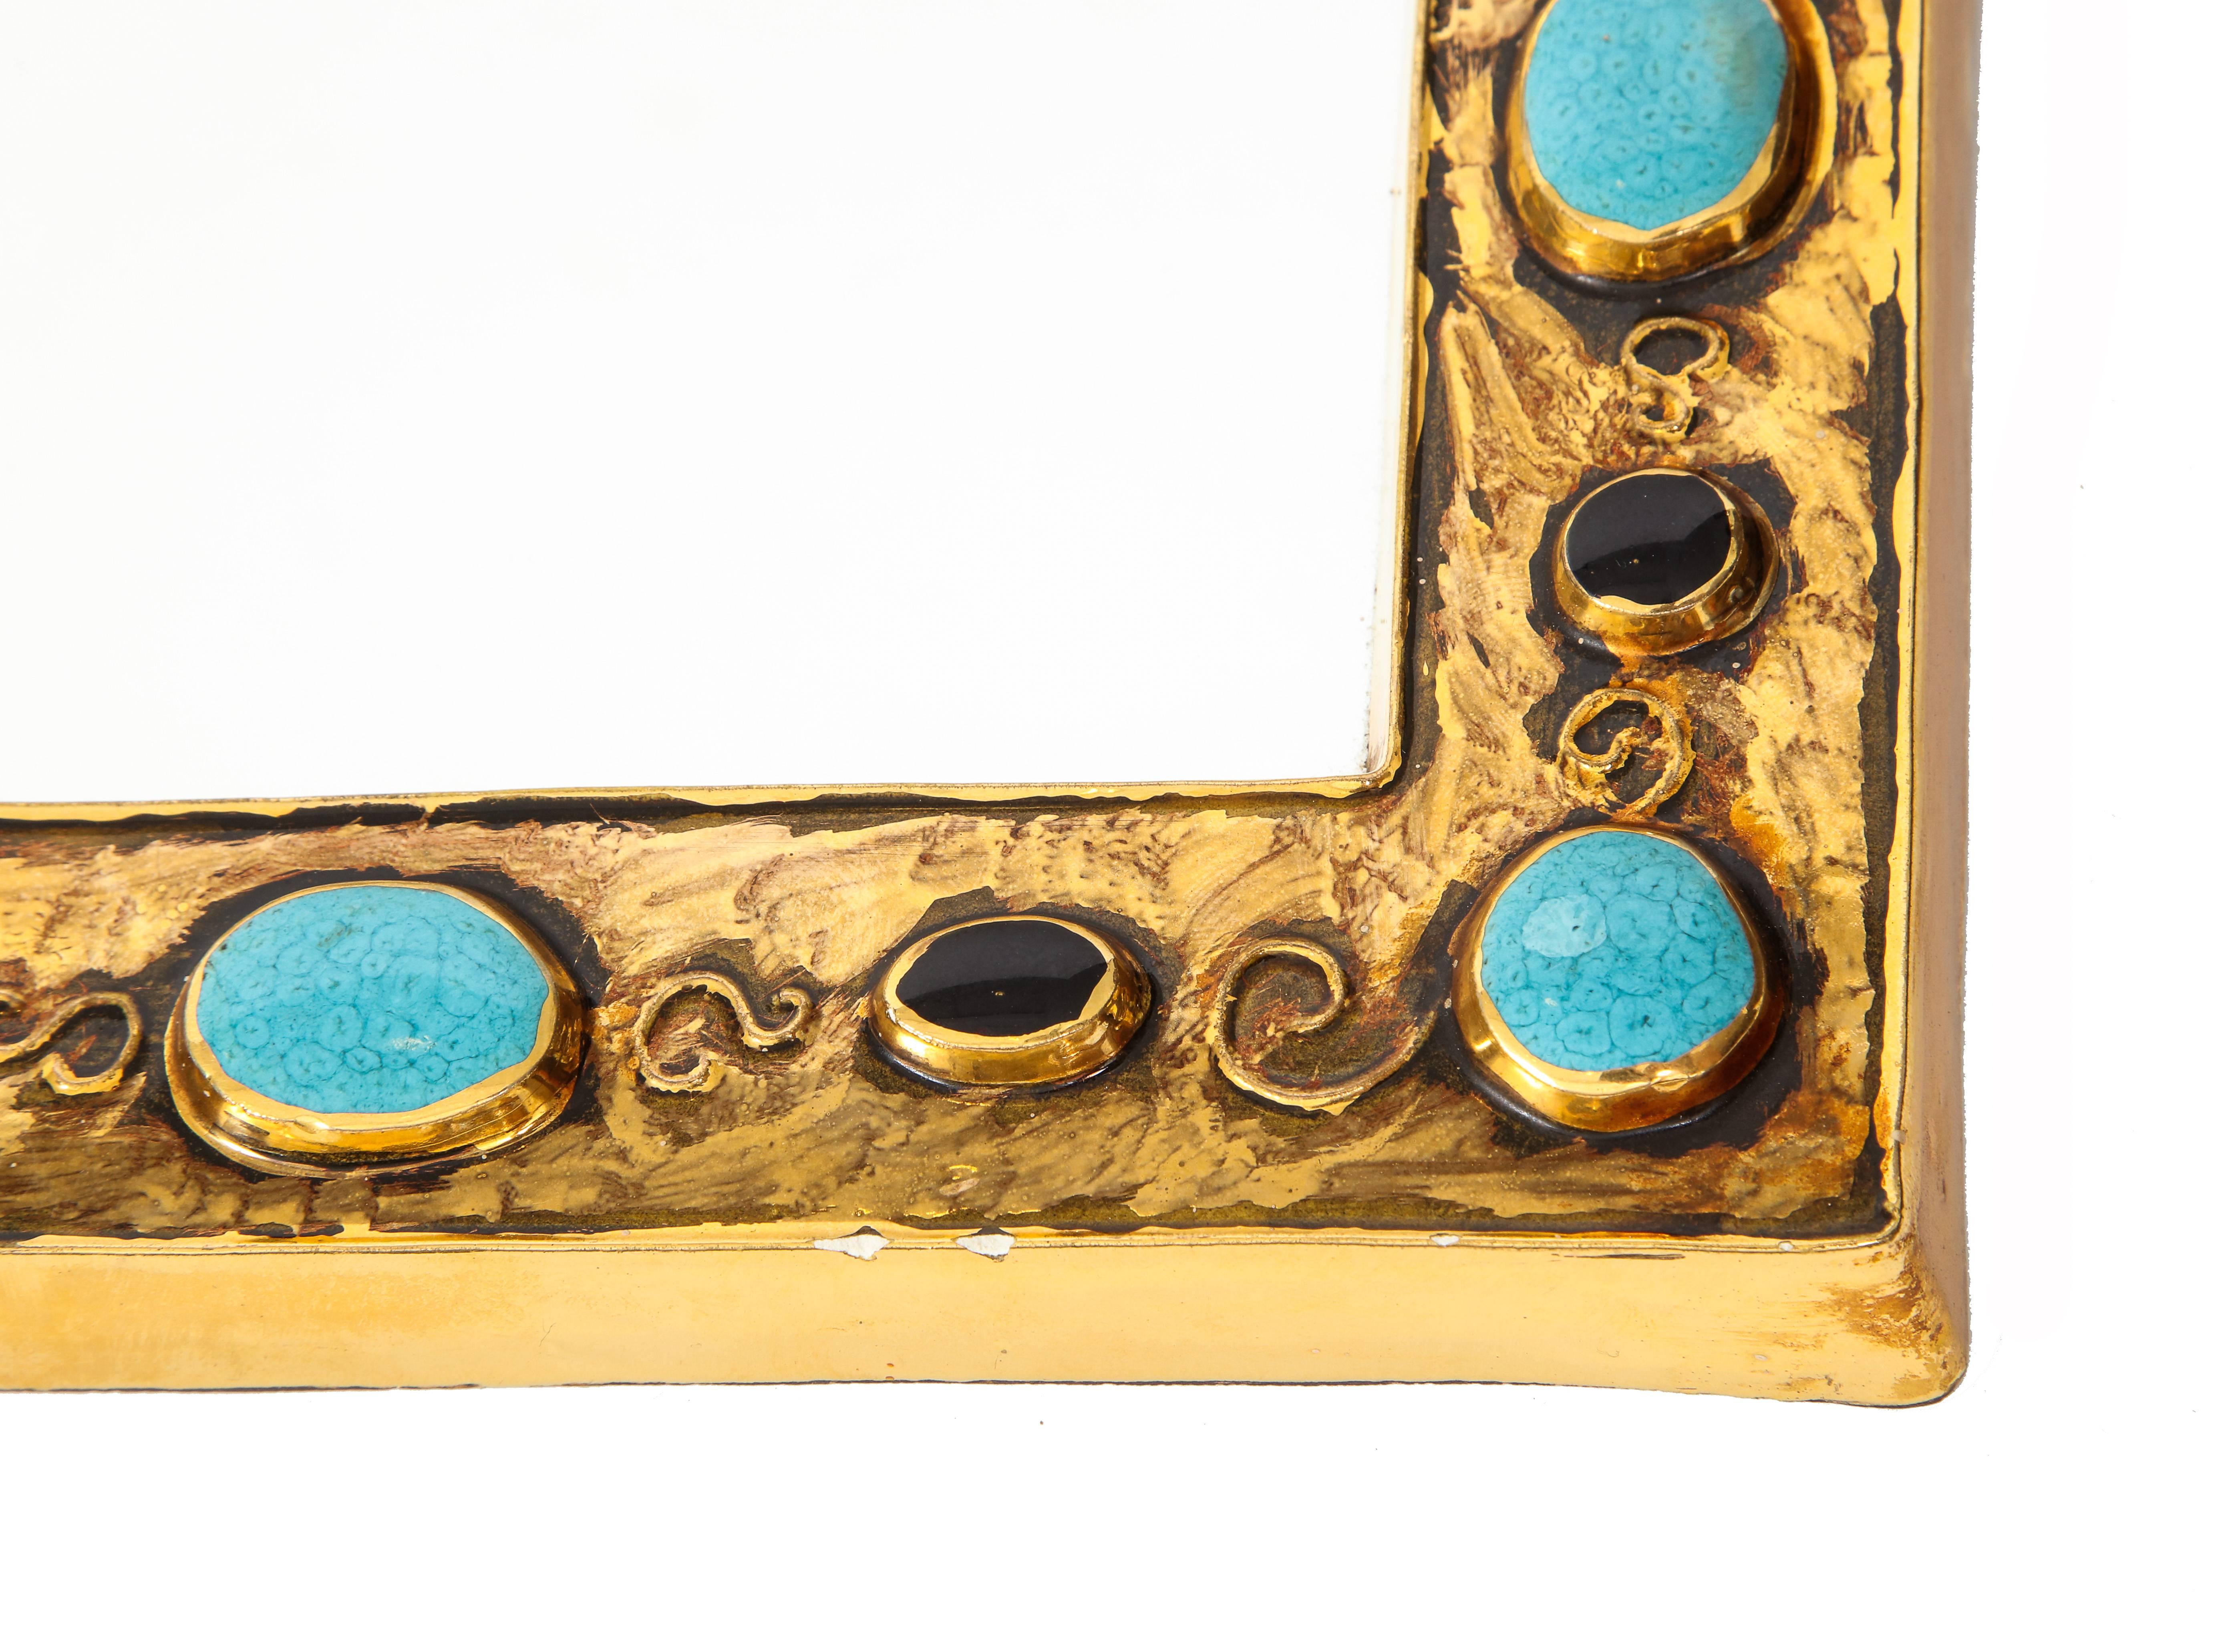 Glazed Francois Lembo Mirror, Ceramic, Jeweled, Gold, Black, and Turquoise, Signed